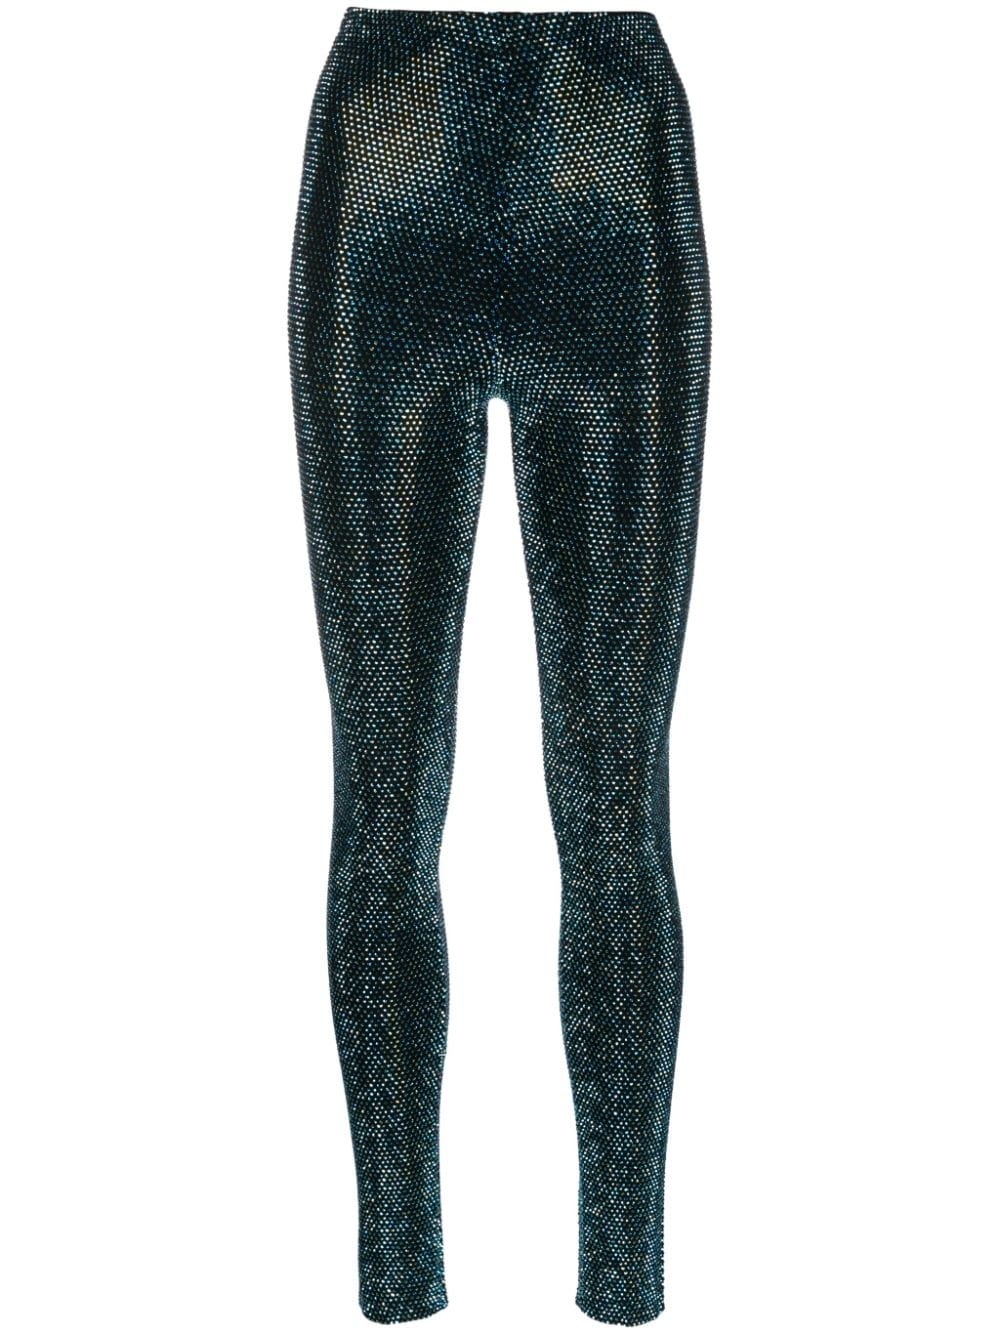 Crystallized high-waisted leggings - 1